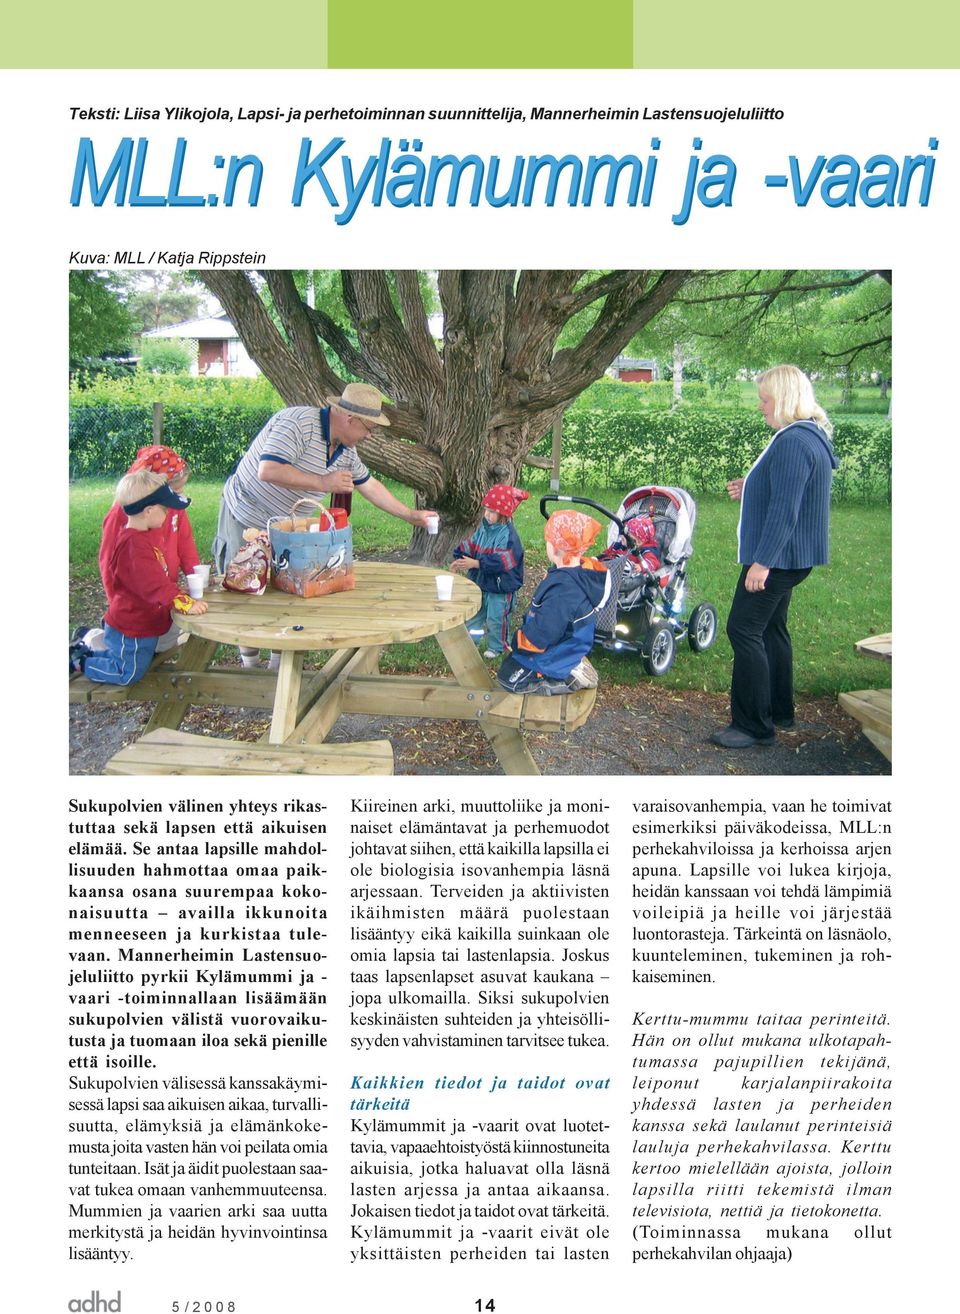 Mannerheimin Lastensuojeluliitto pyrkii Kylämummi ja vaari -toiminnallaan lisäämään sukupolvien välistä vuorovaikutusta ja tuomaan iloa sekä pienille että isoille.